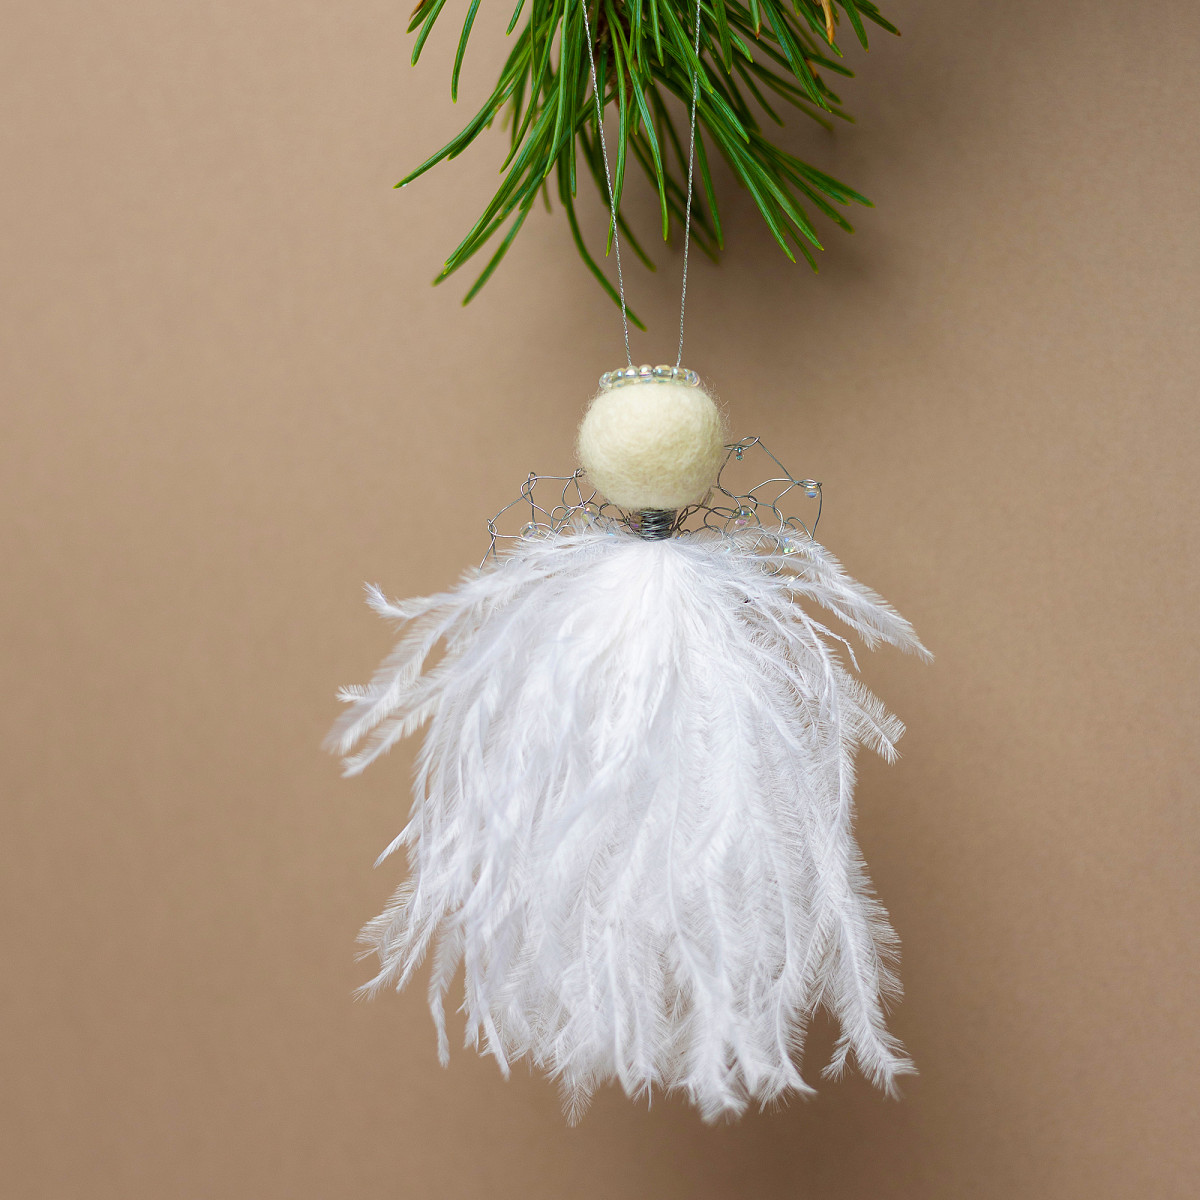 Gaver med mening: Juleengel med hvite fjær og perlemorfargede perler. I miljø.